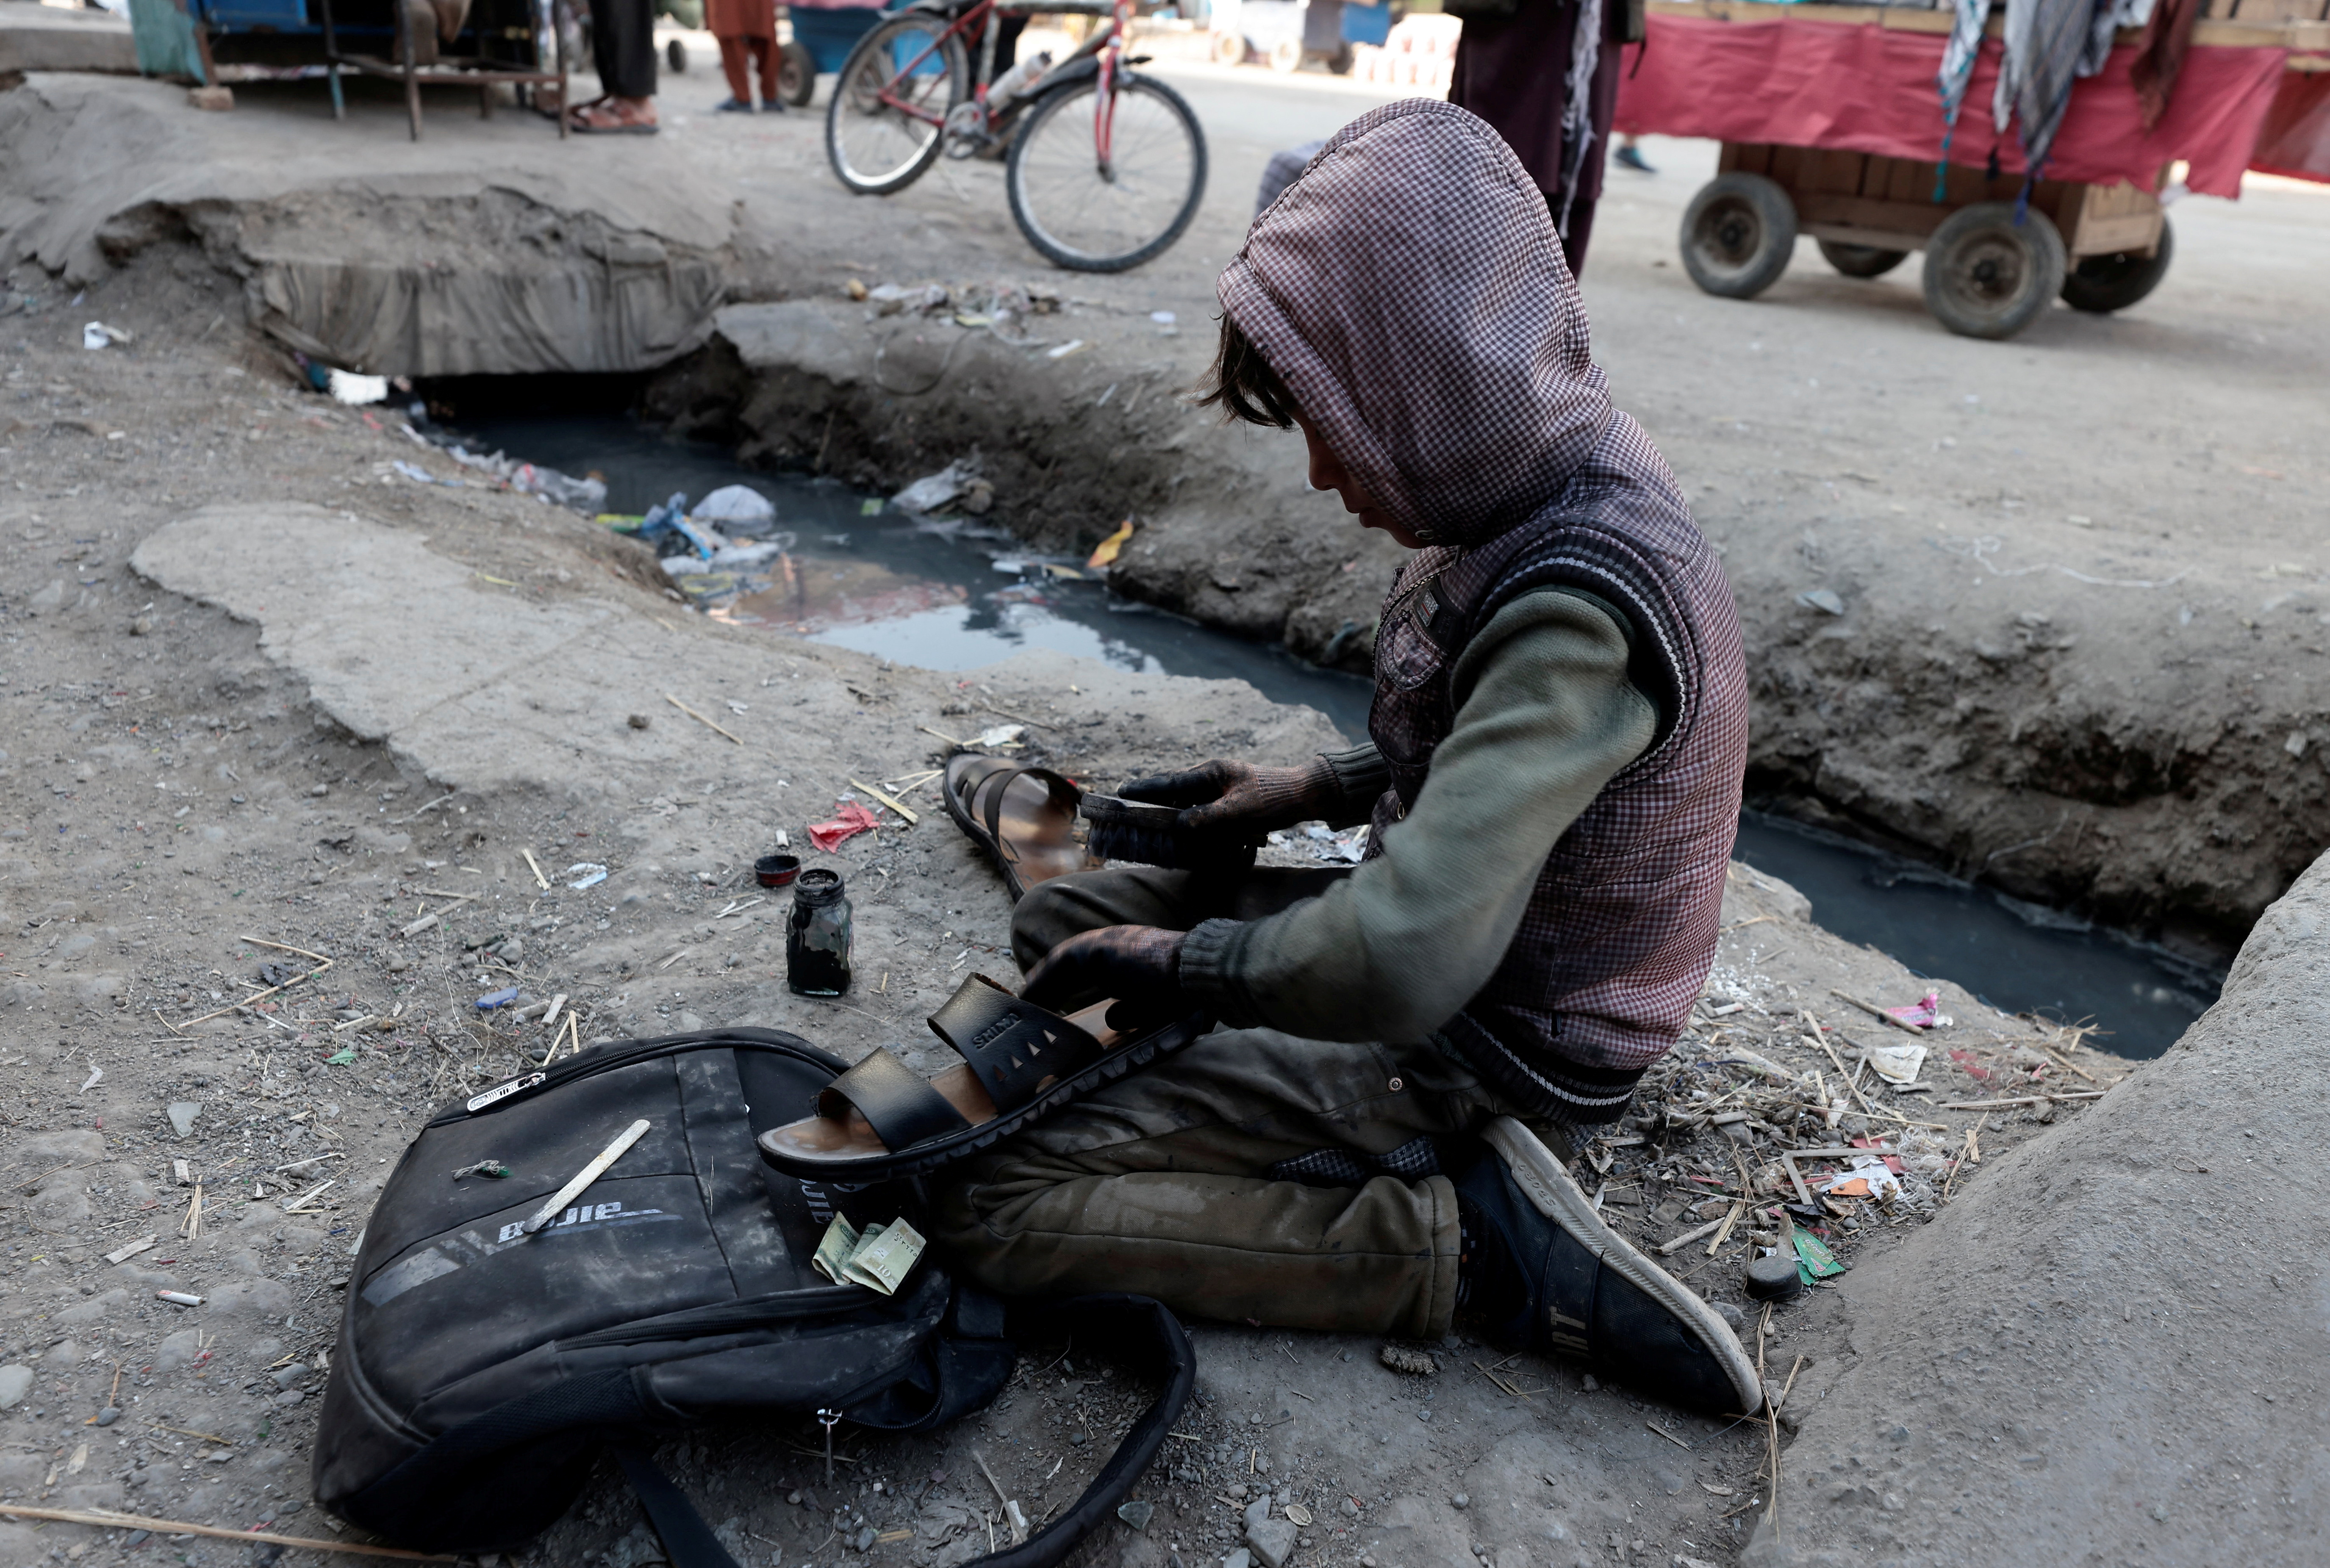 Sameerullah, 11, un lustrabotas limpia un zapato en el mercado de Kabul, Afganistán, 29 de octubre de 2021. REUTERS / Zohra Bensemra